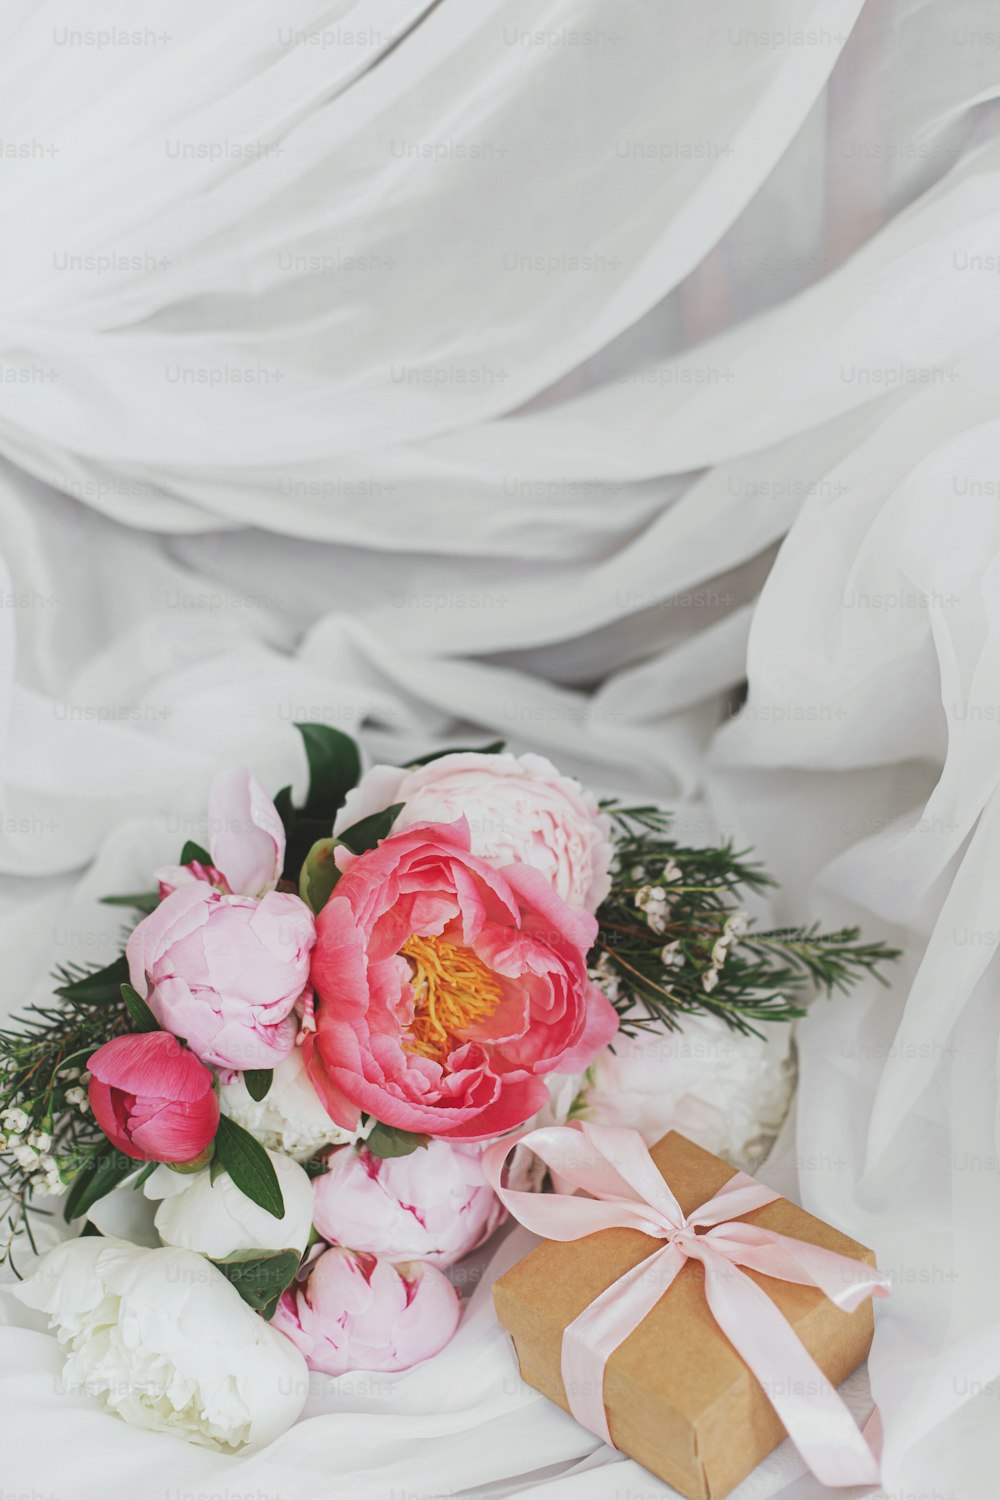 Hermoso y elegante ramo de peonías y caja de regalo en suave tela blanca en silla rústica. Flores de peonía rosadas y blancas y presentes. Feliz día de la madre. Mañana nupcial